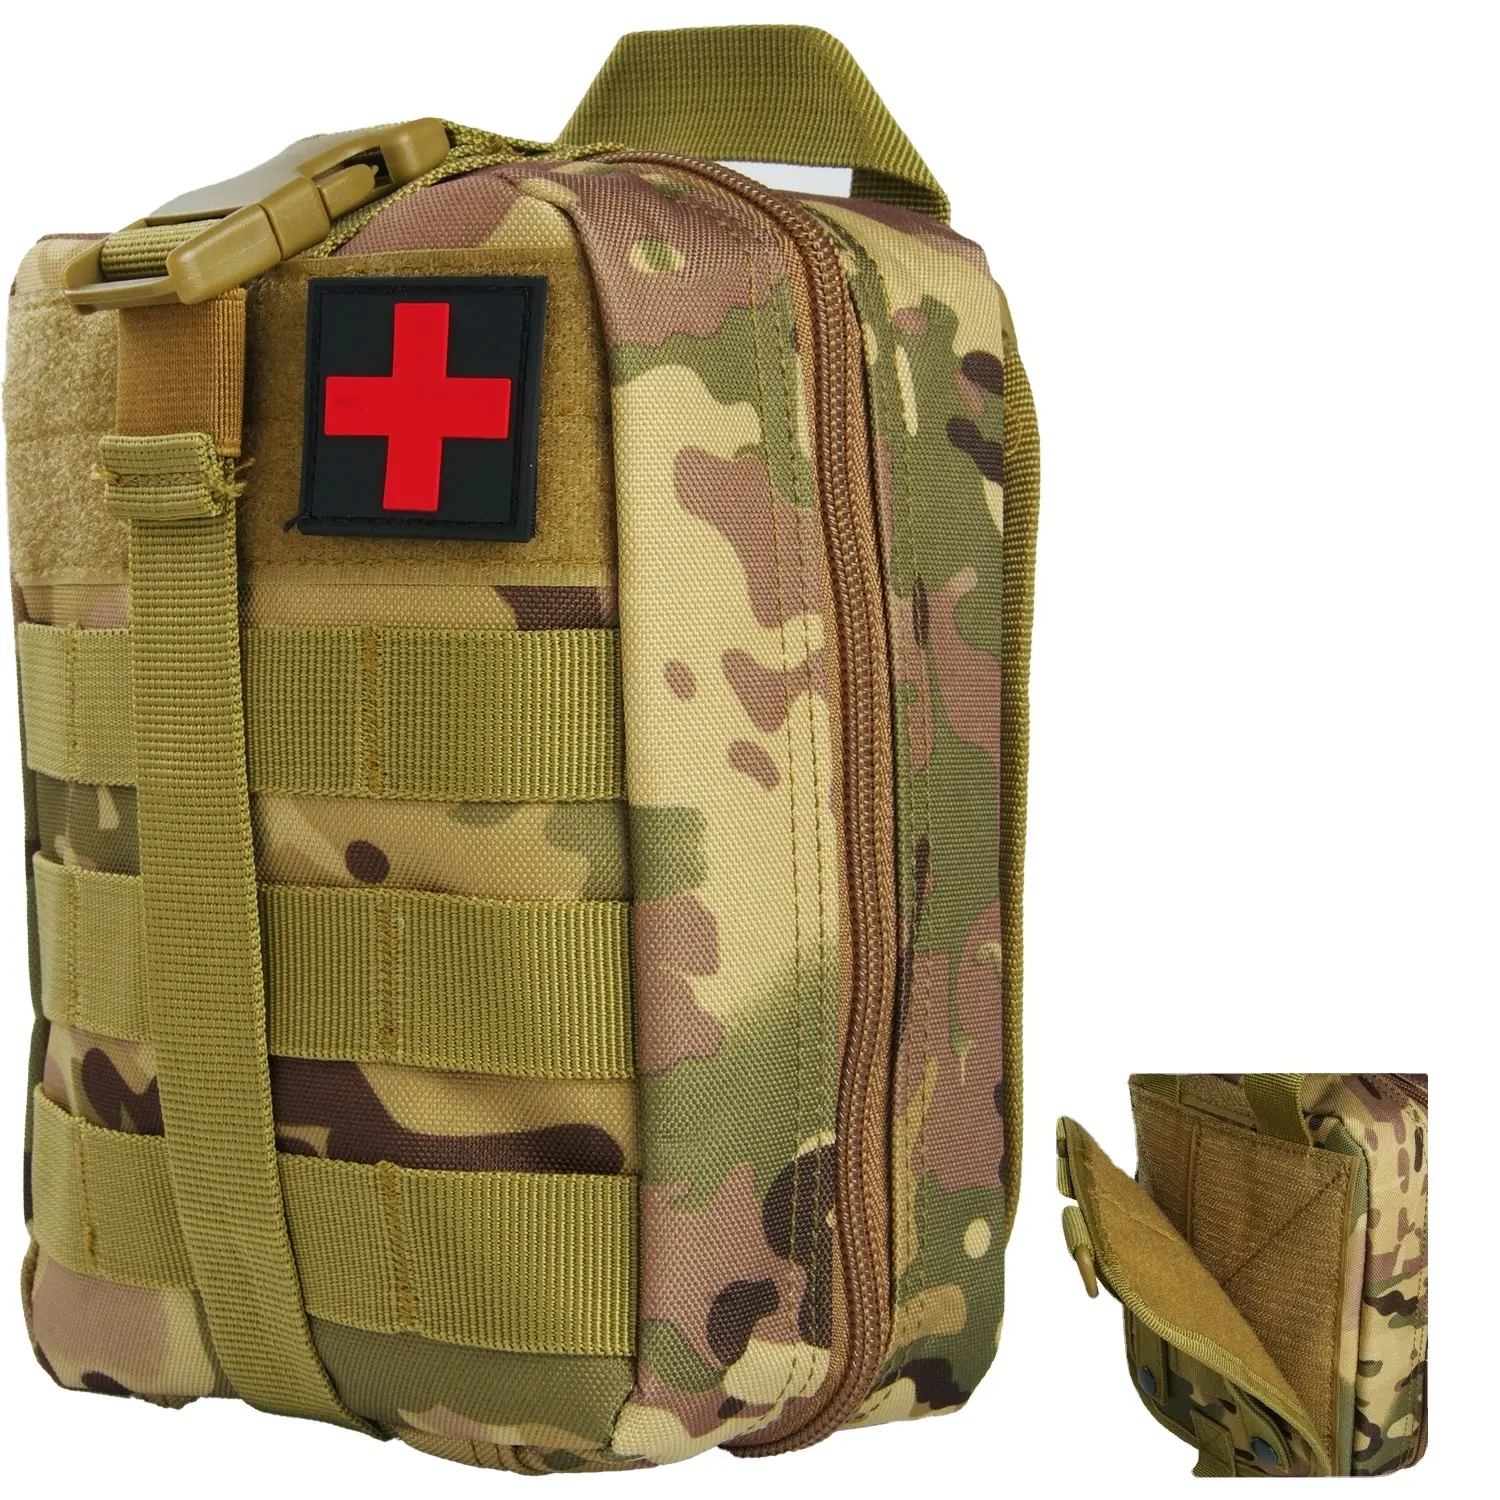 Trousse de premiers soins 28 en 1 Kit complet Molle Outdoor Gear Kits d'urgence Camping Randonnée Aventures Sac de traumatologie Trousse de premiers soins